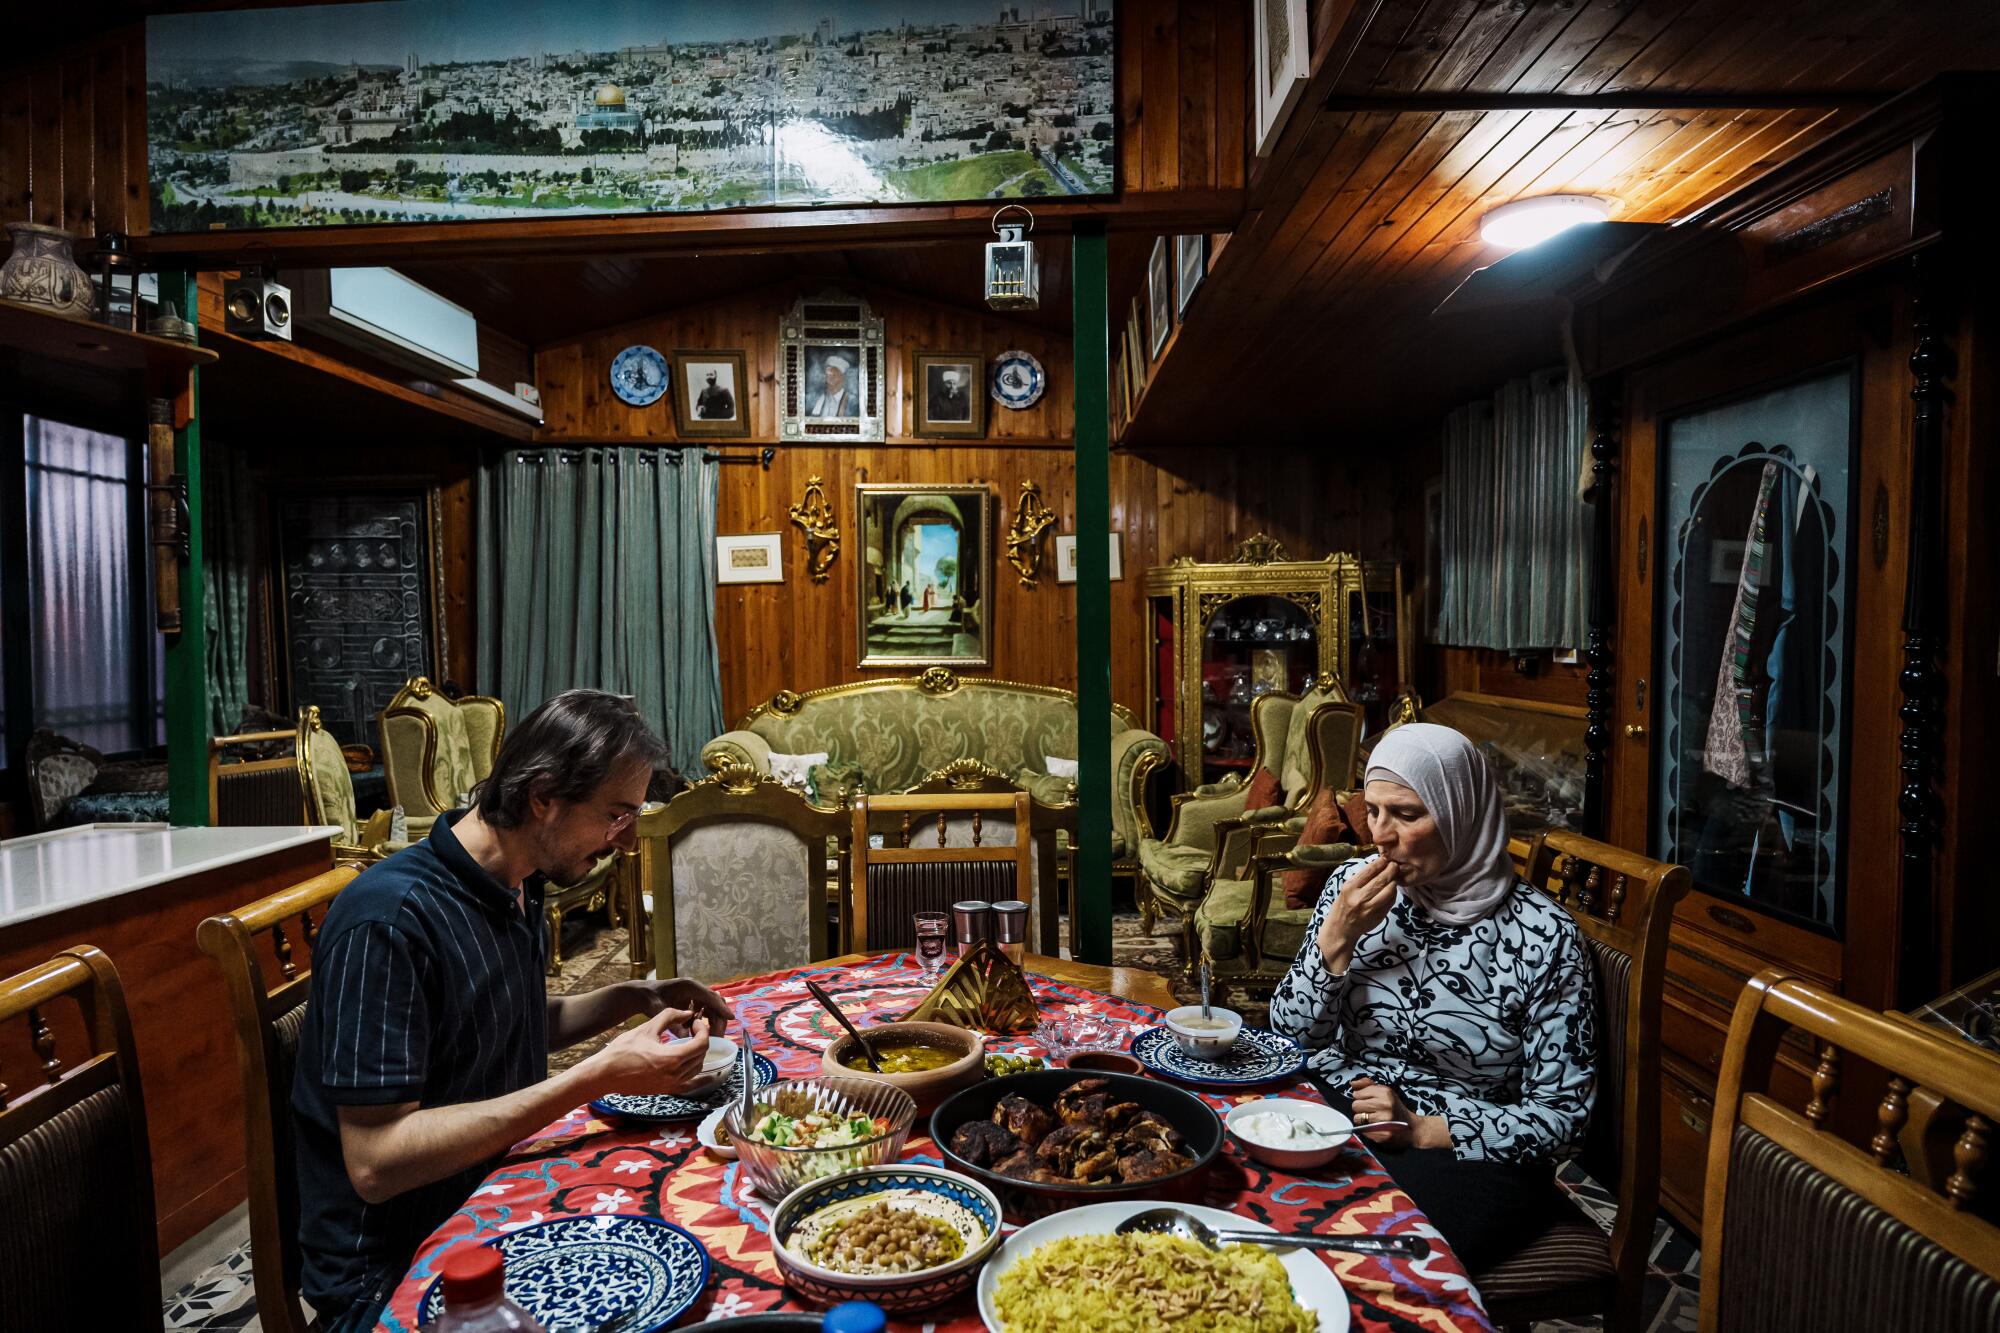 مرد و زن سالخورده ای در خانه ای سر سفره ای نشسته اند و افطاری می خورند.